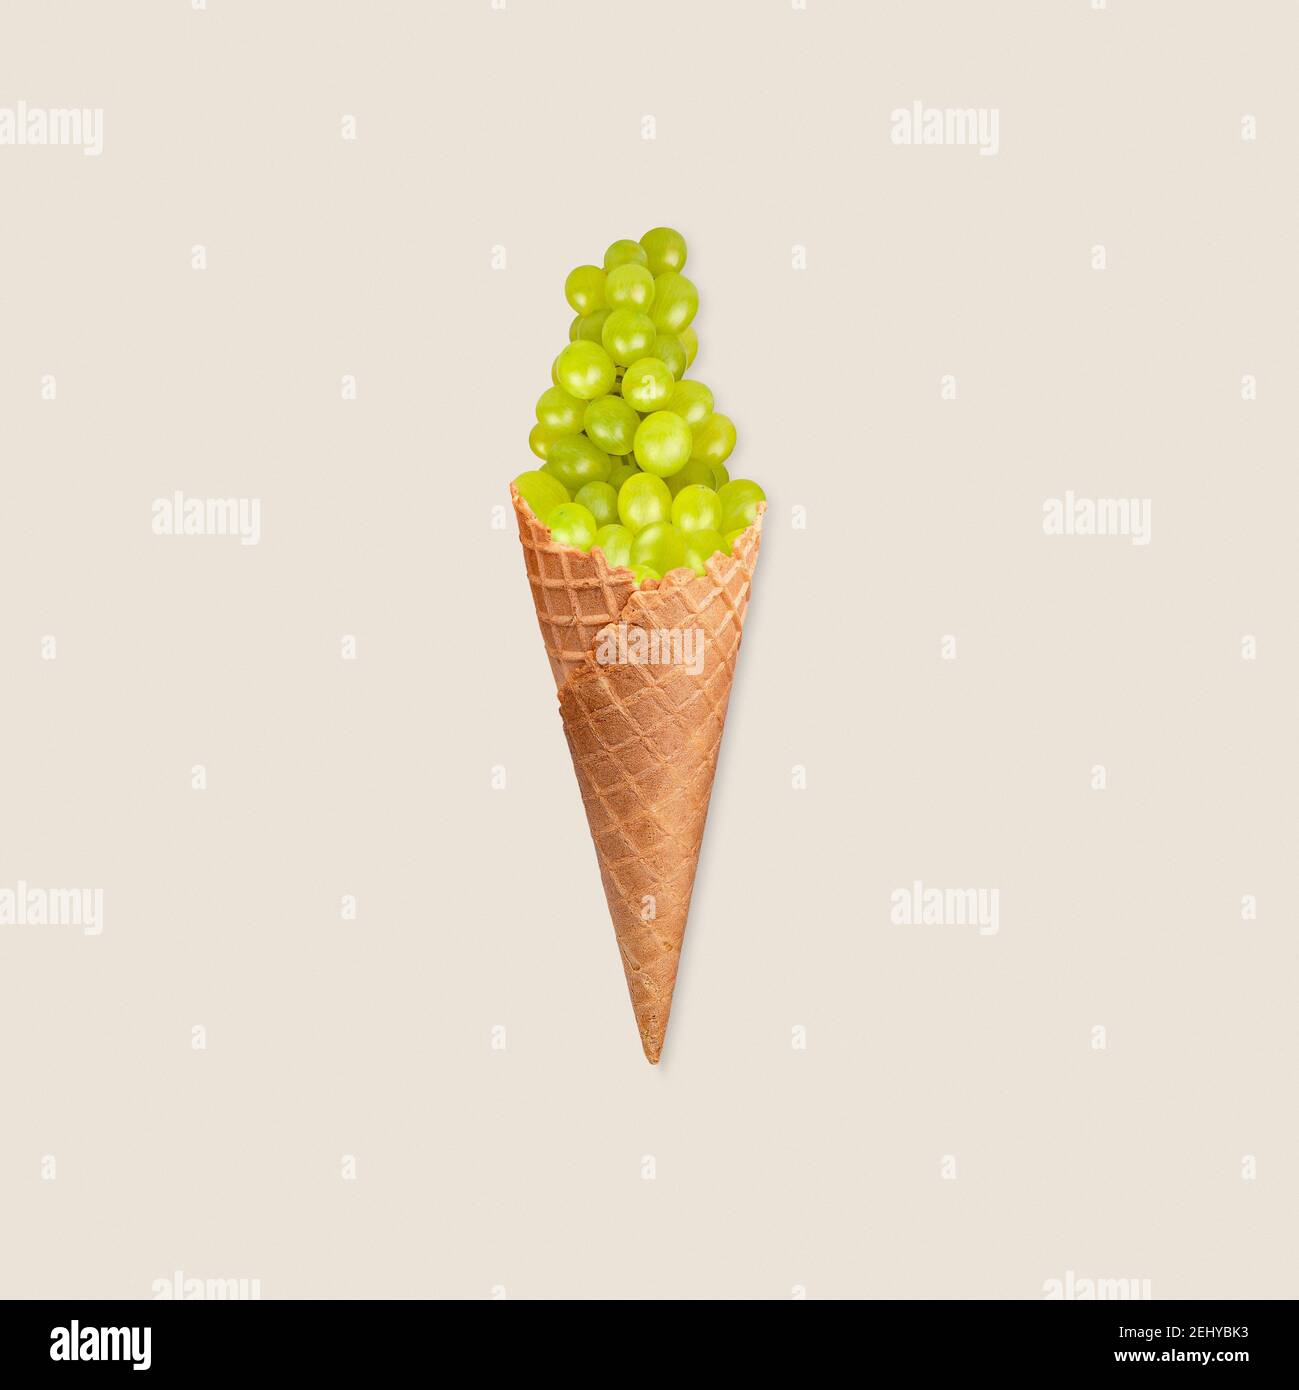 Concept de saine alimentation avec la manipulation photo de crème glacée au raisin vert sur fond pastel Banque D'Images